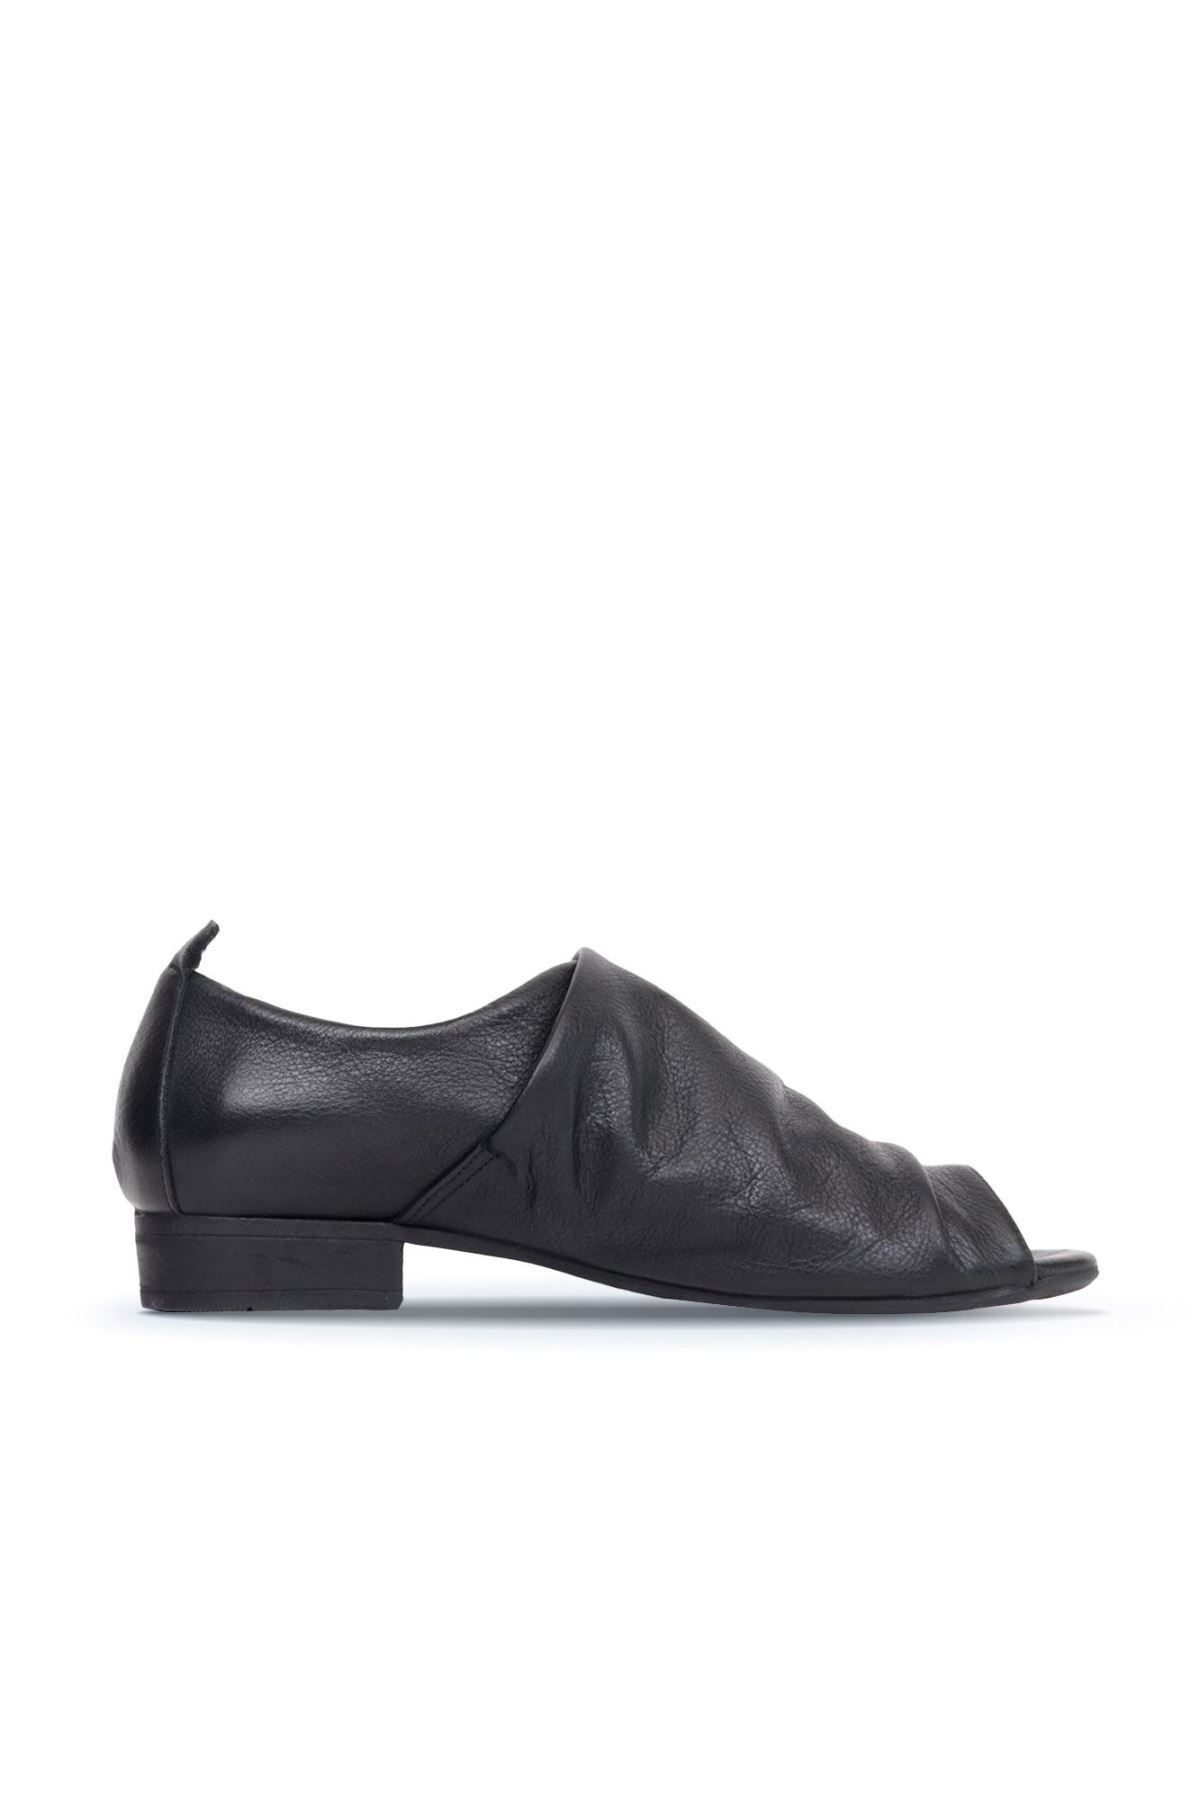 BUENO Shoes Siyah Deri Kadın Az Topuklu Ayakkabı